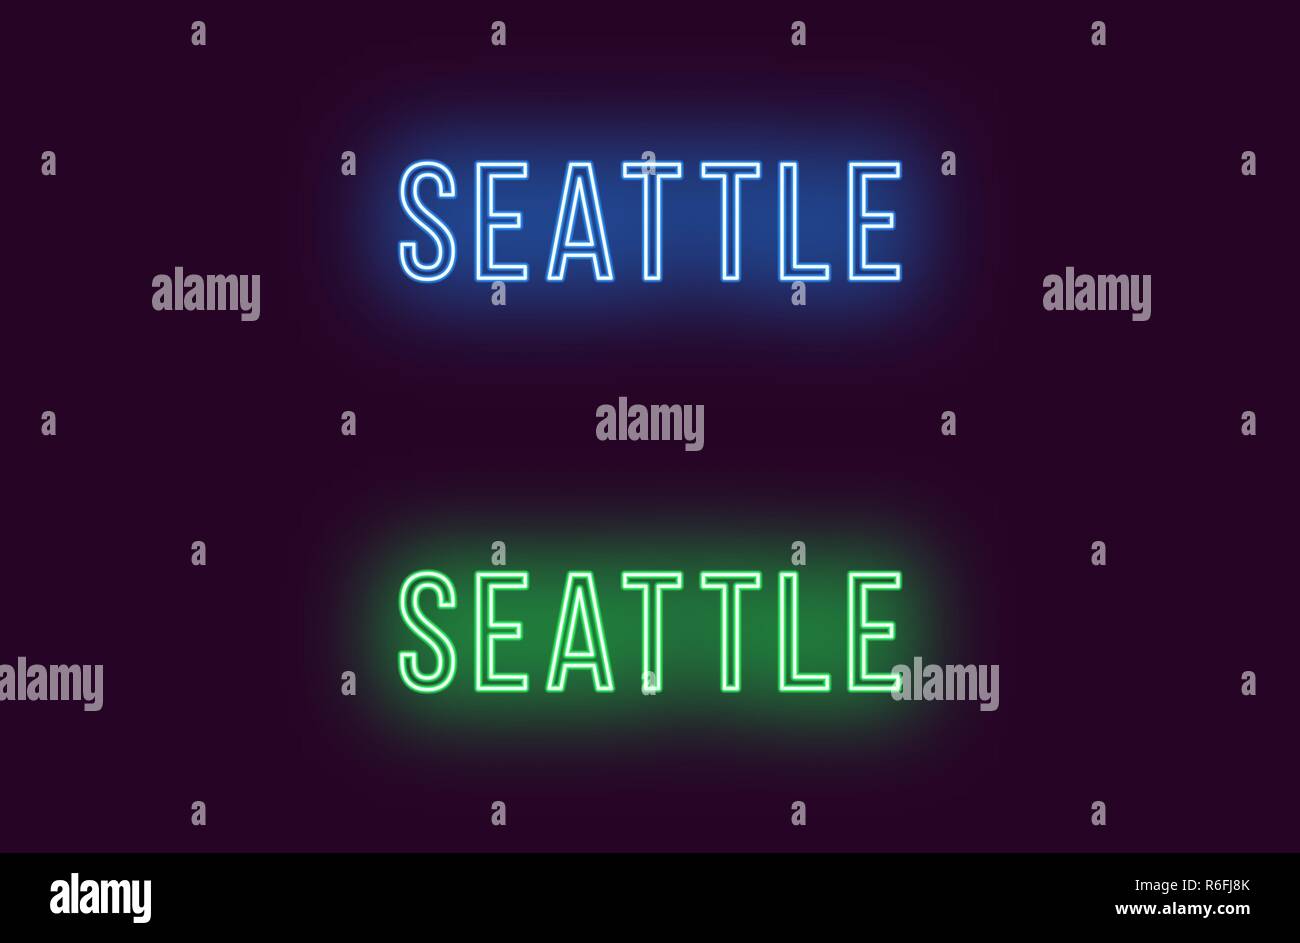 Neon Name des Seattle City in den USA. Vektor Text von Seattle, Neon Beschriftung mit Hintergrundbeleuchtung in dünnen, blauen und grünen Farben. Isolierte glühende Titel Stock Vektor